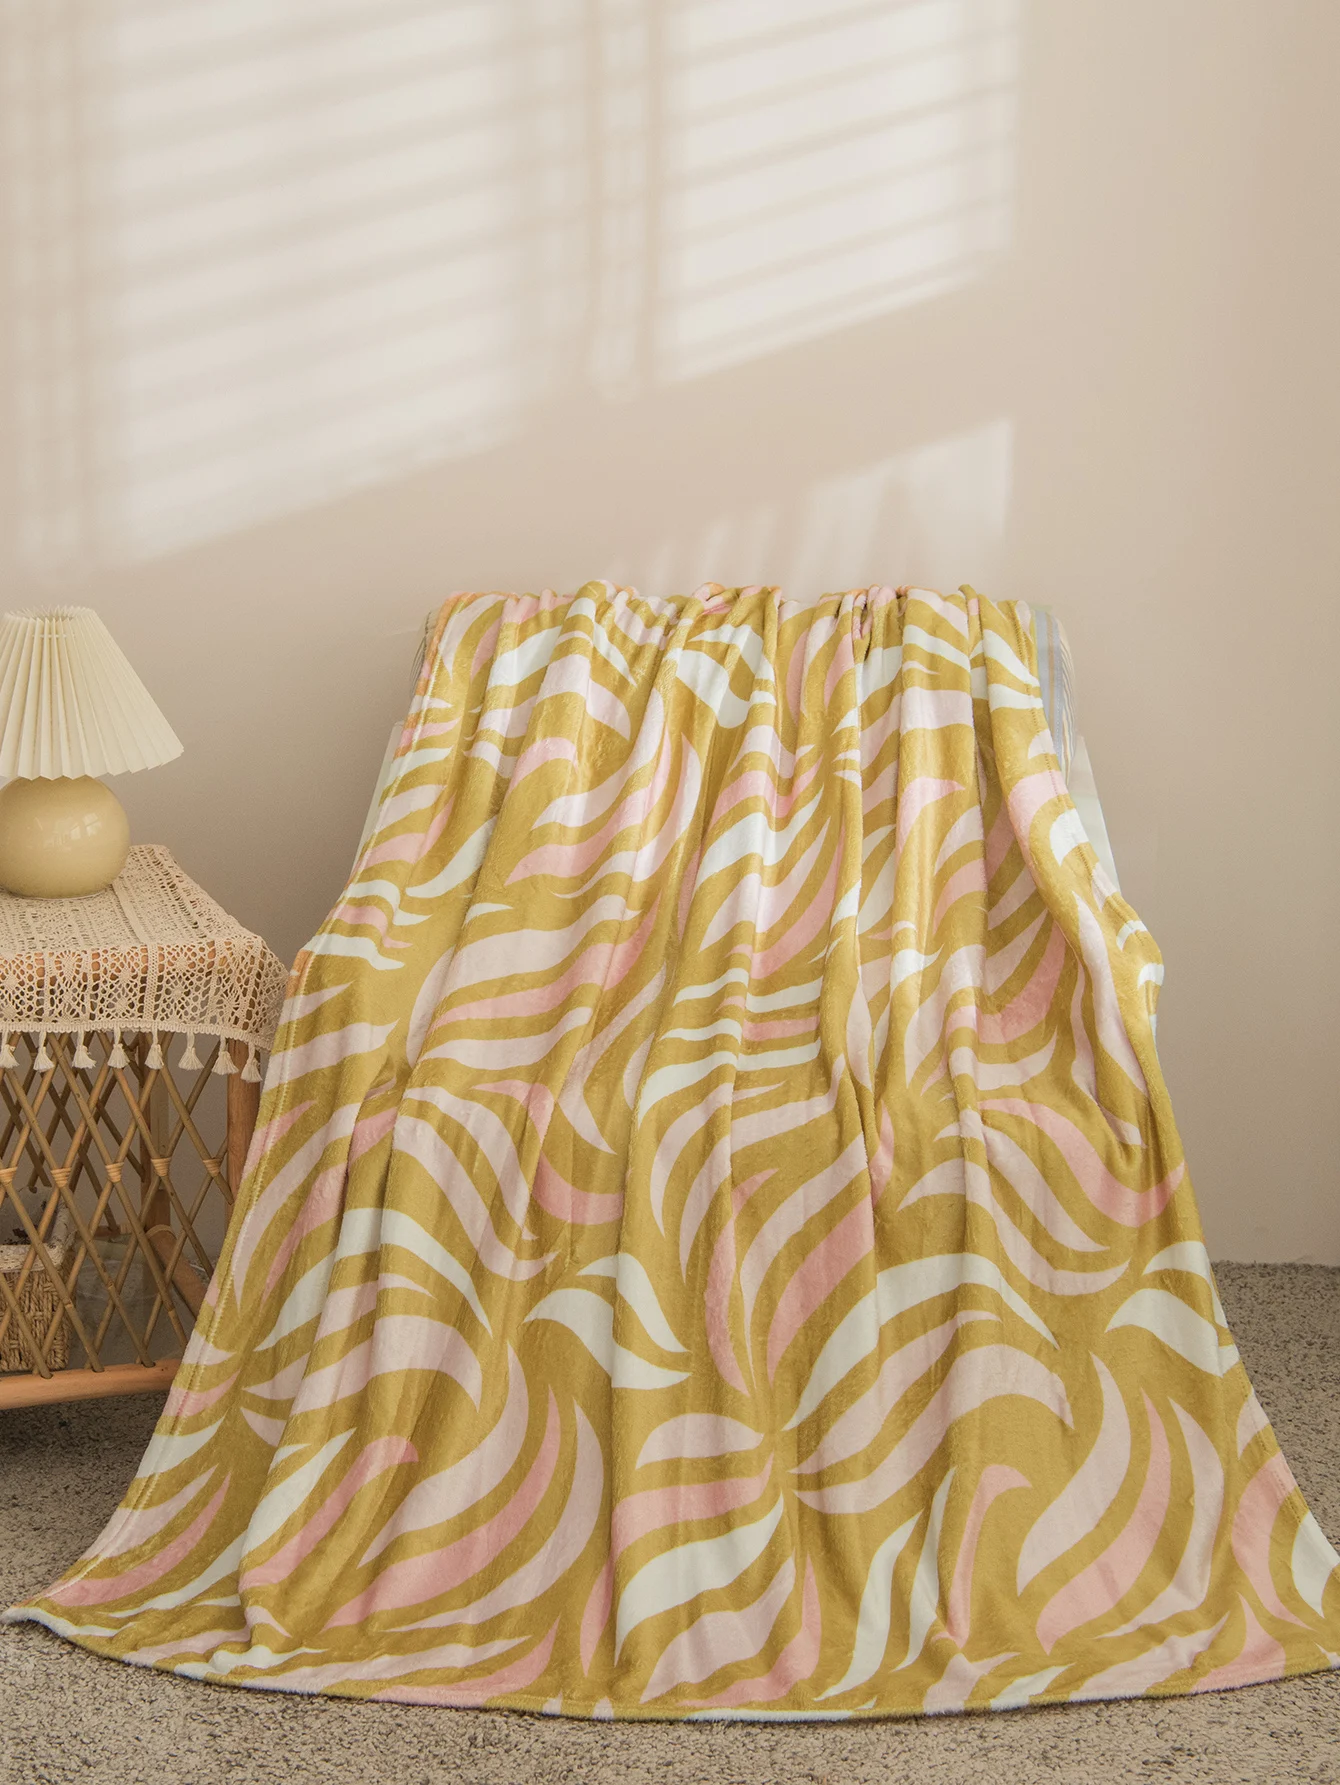 

Фланелевое Одеяло Plam с листьями деревьев, ботаническое плюшевое одеяло, теплое покрывало для кровати, имбирное желтое пушистое покрывало для кровати, дивана, Прямая поставка